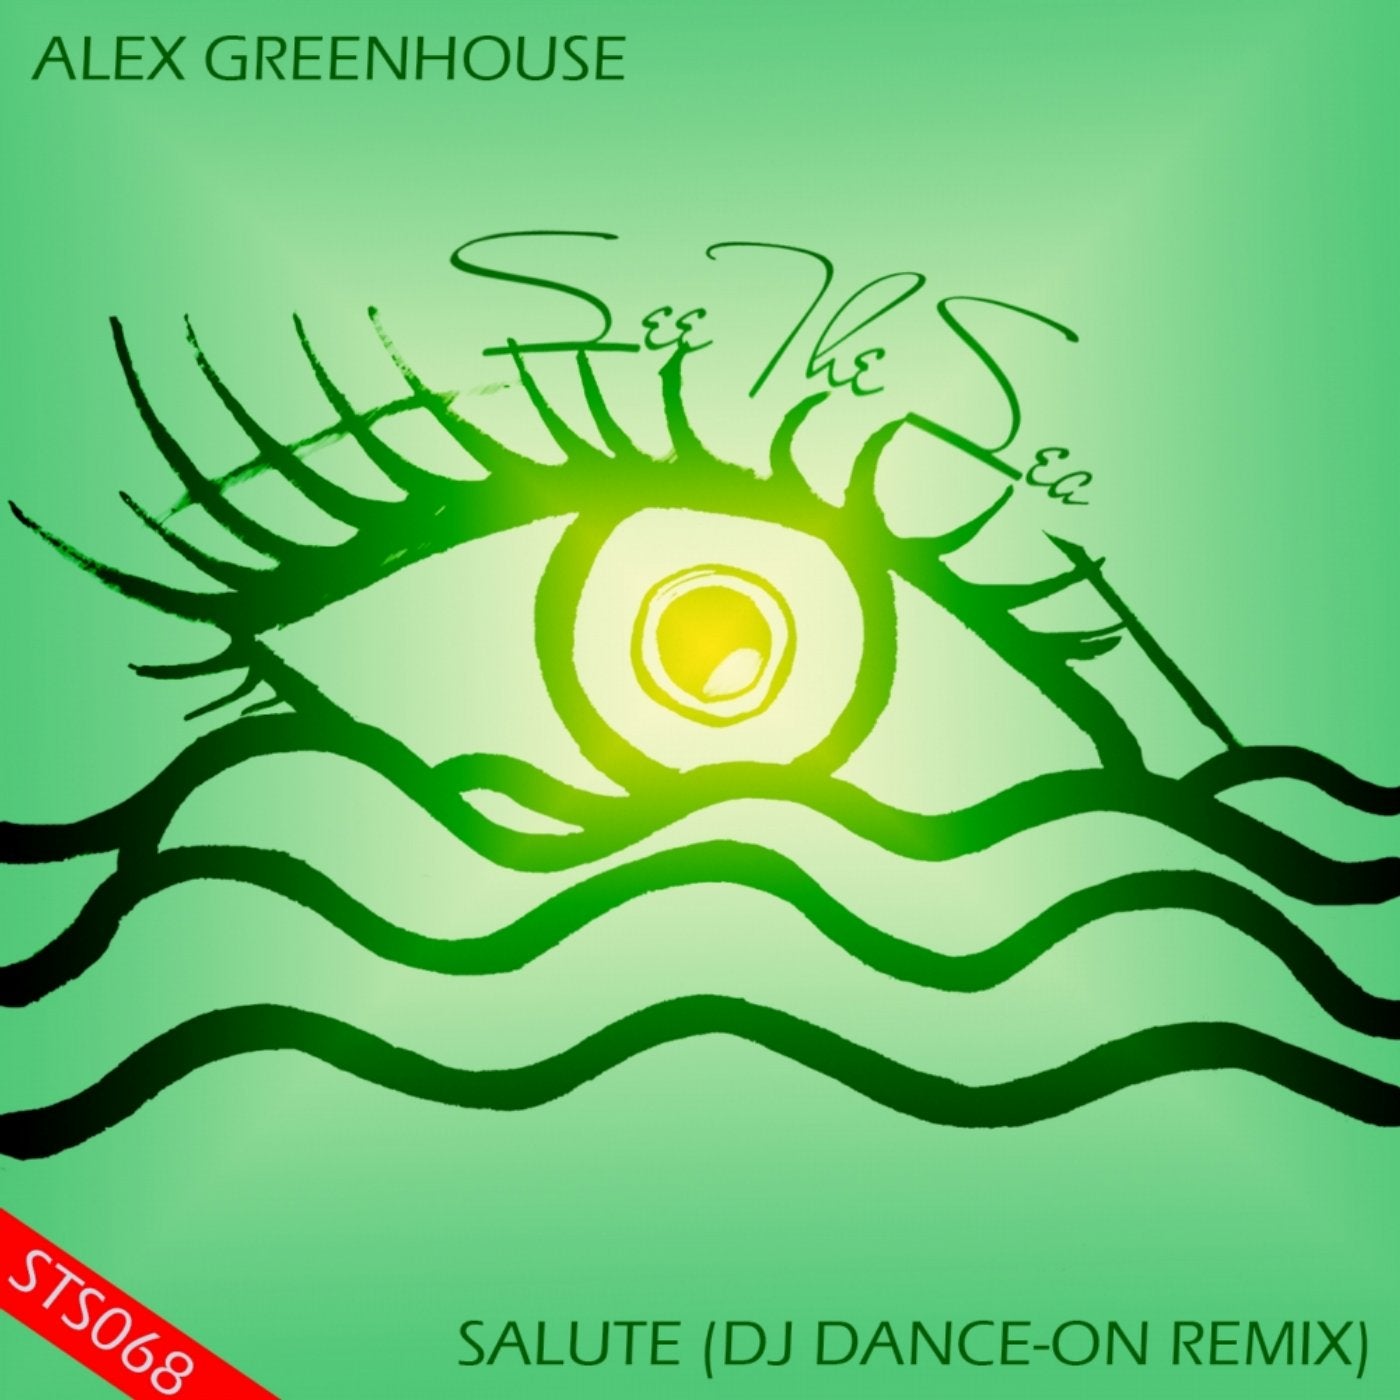 Salute (Dj Dance-On Remix)